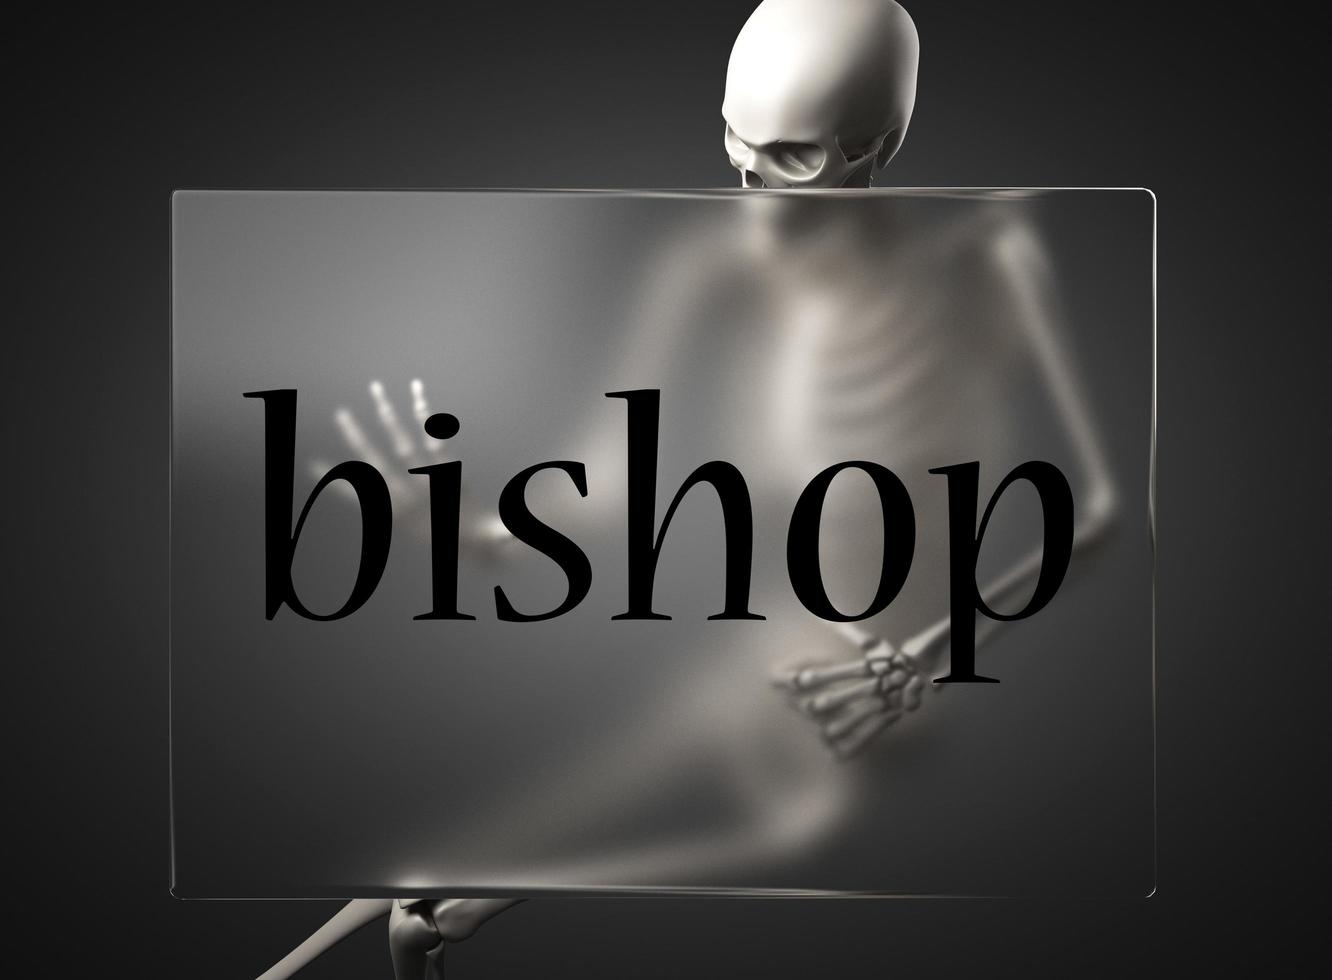 biskopsord om glas och skelett foto